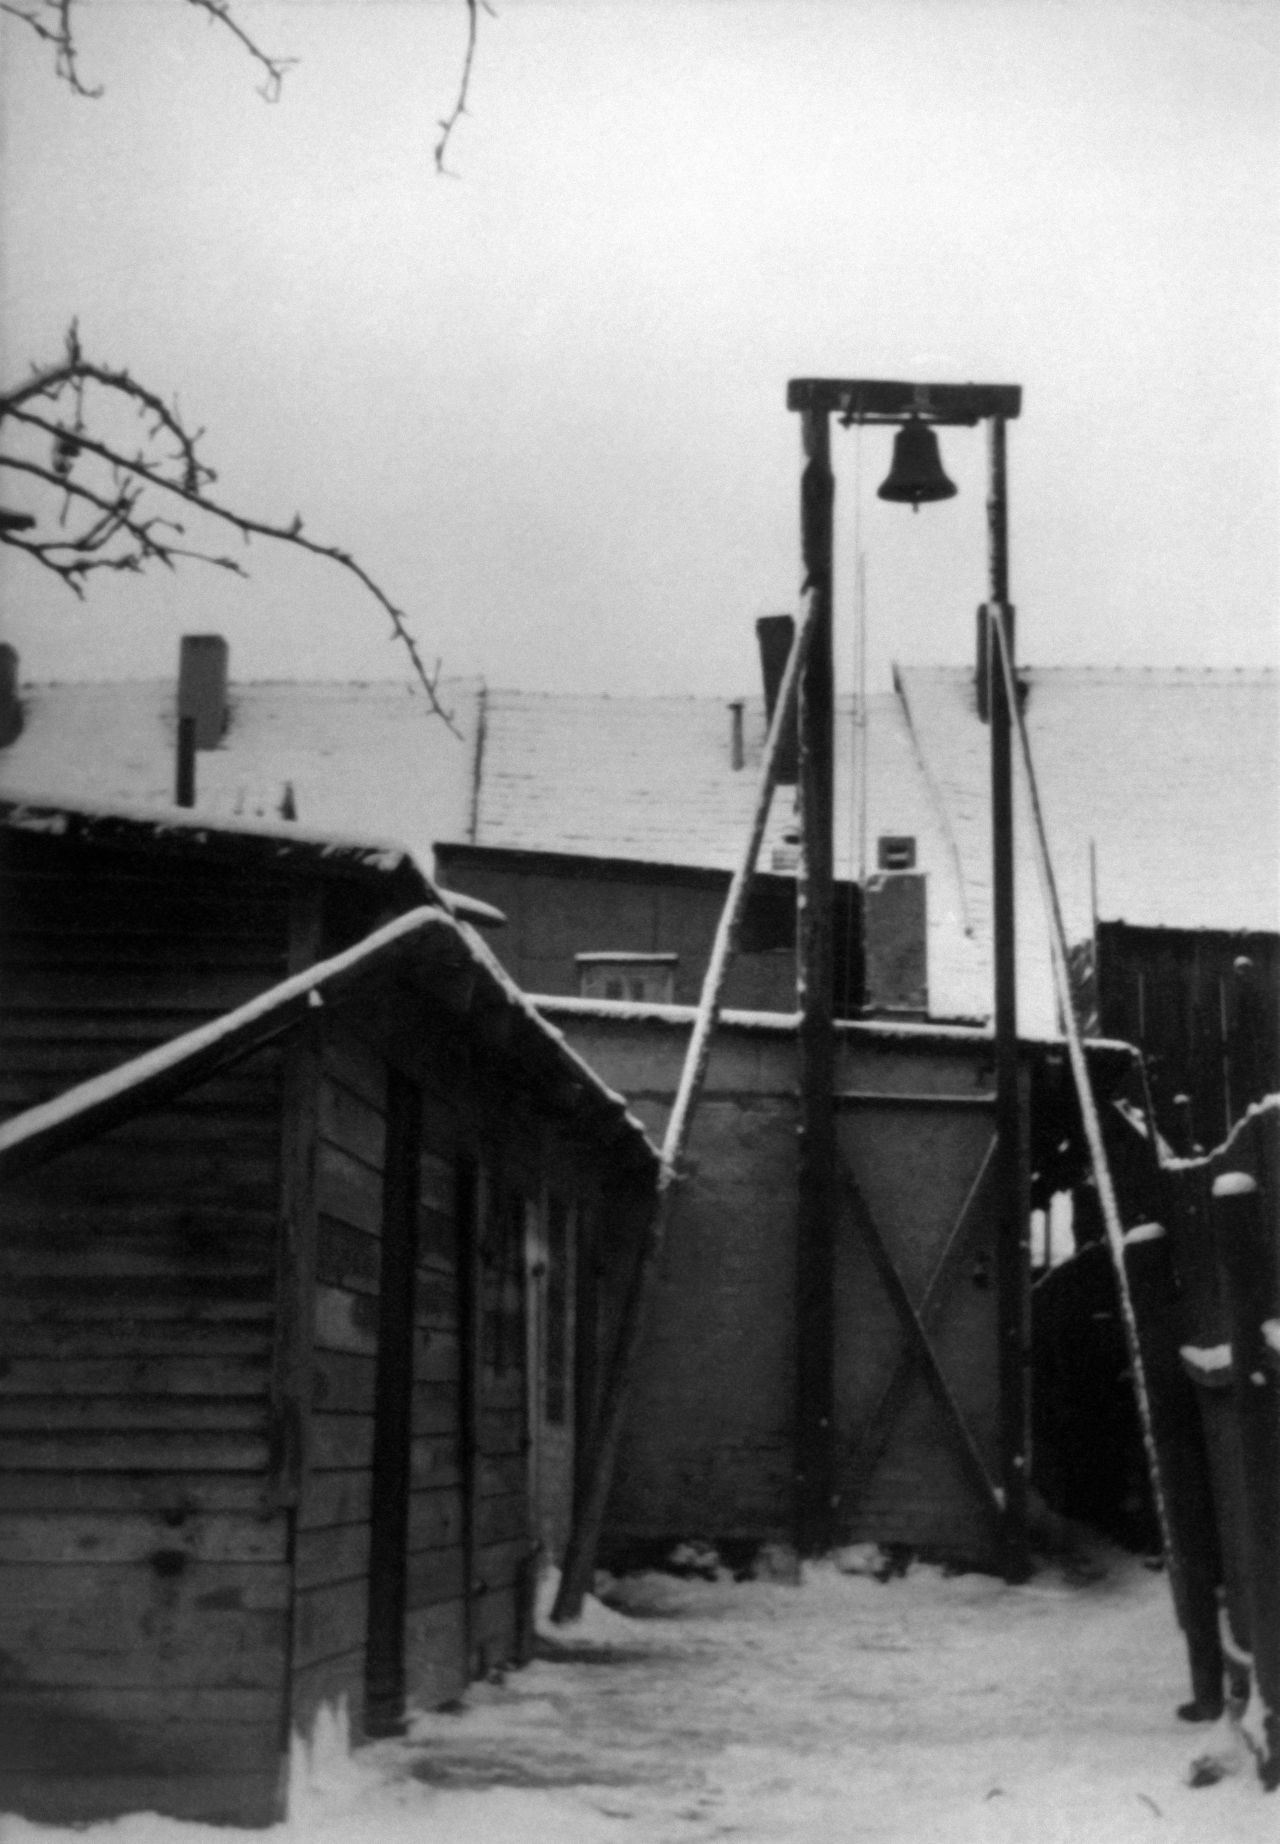 Schwarz-weißes Foto-Positiv mit der Abbildung einer Holzbaracke im Vordergrund, neben der an einem hohen Holzgerüst eine Glocke hängt. Im Hintergrund weitere Gebäude.